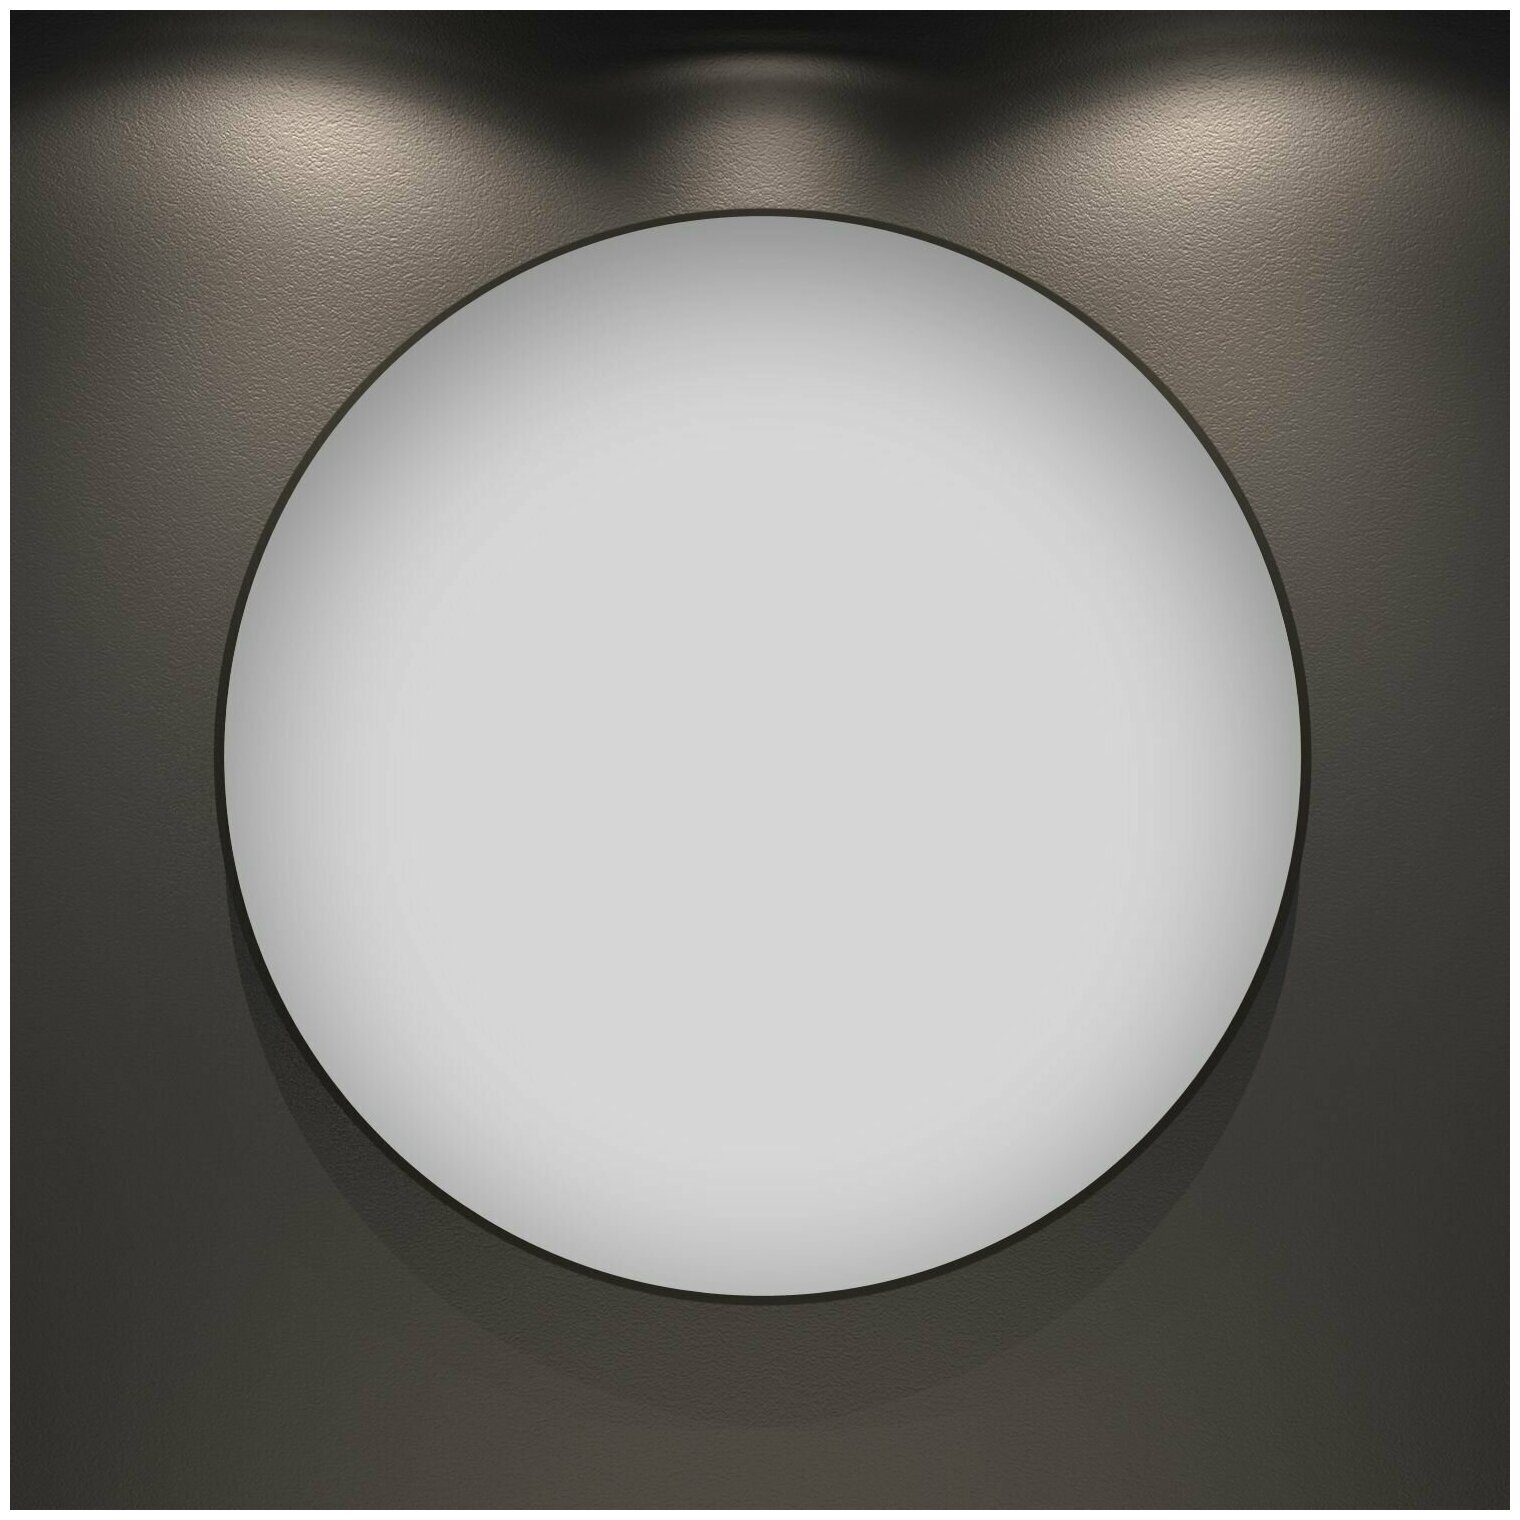 Влагостойкое круглое зеркало Wellsee 7 Rays' Spectrum 172200030, диаметр 65 см, с тонким черным матовым контуром - фотография № 1